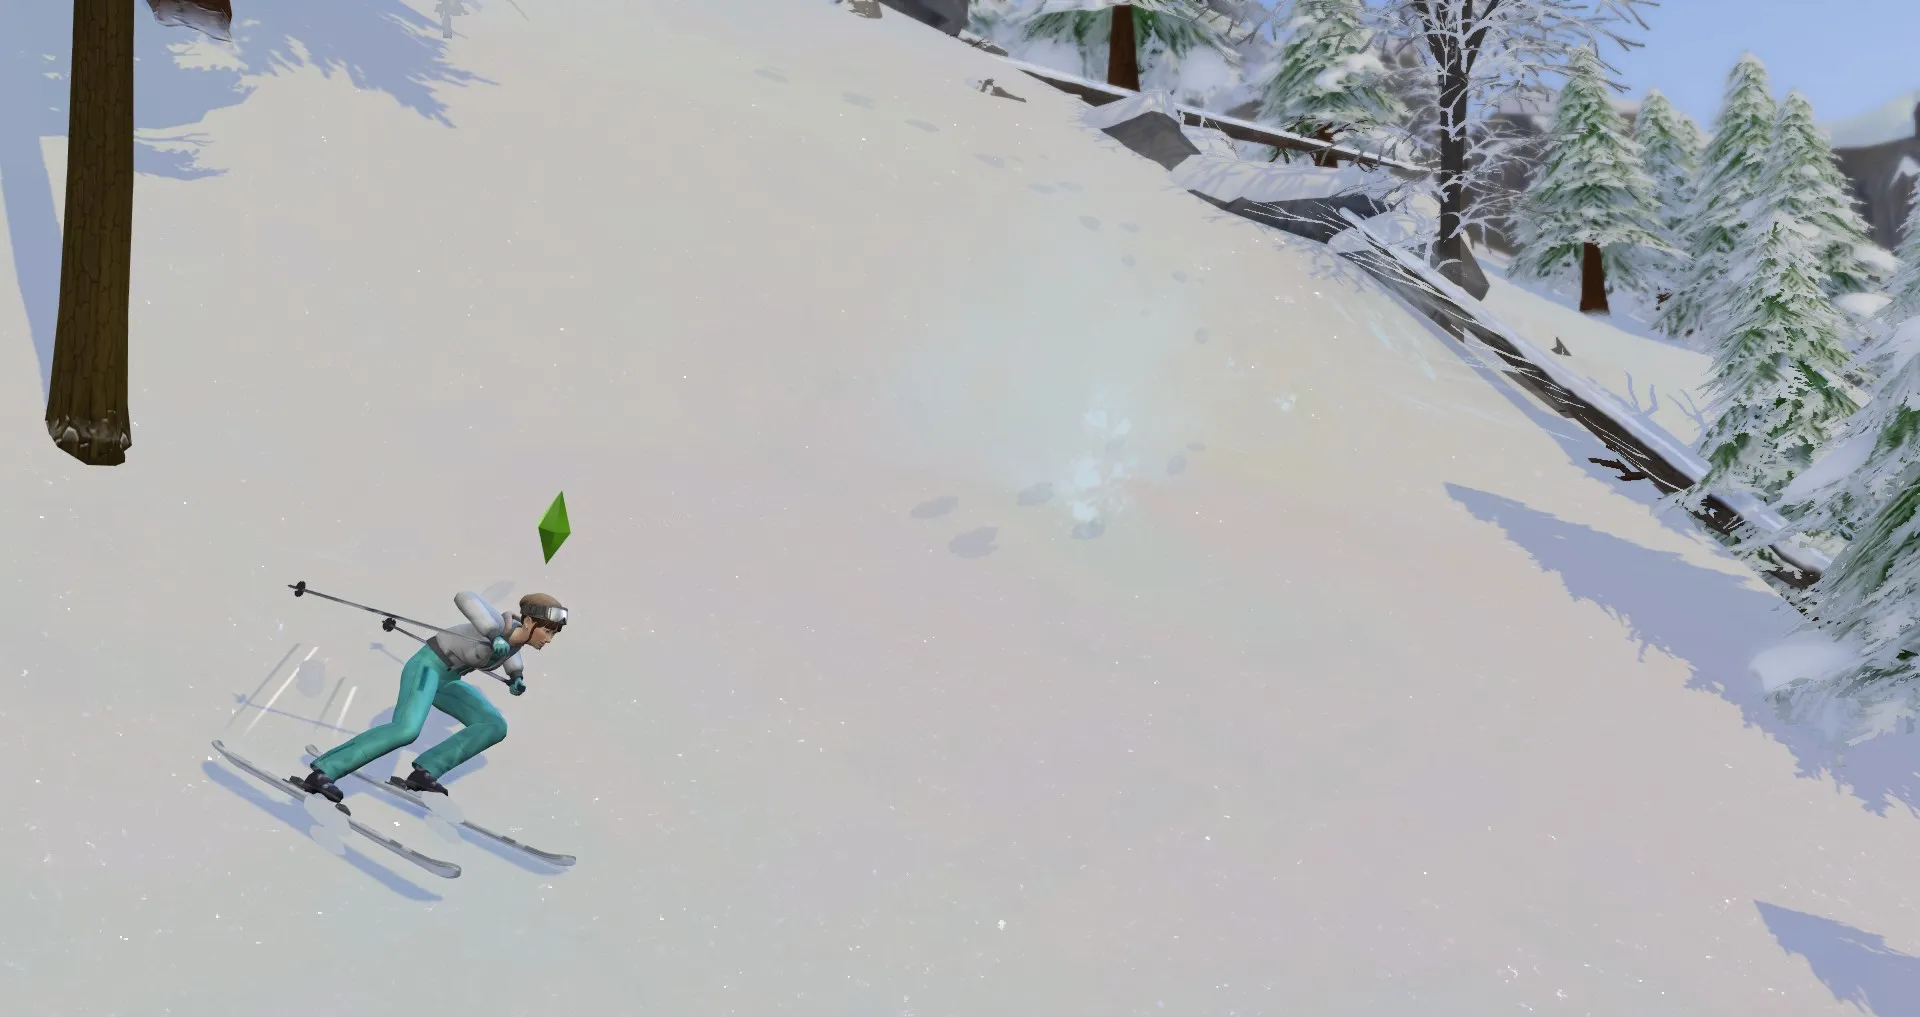 Сим катается на лыжах по самой сложной горе Мт. Комореби. Навык катания на лыжах в The Sims 4: Снежная побега